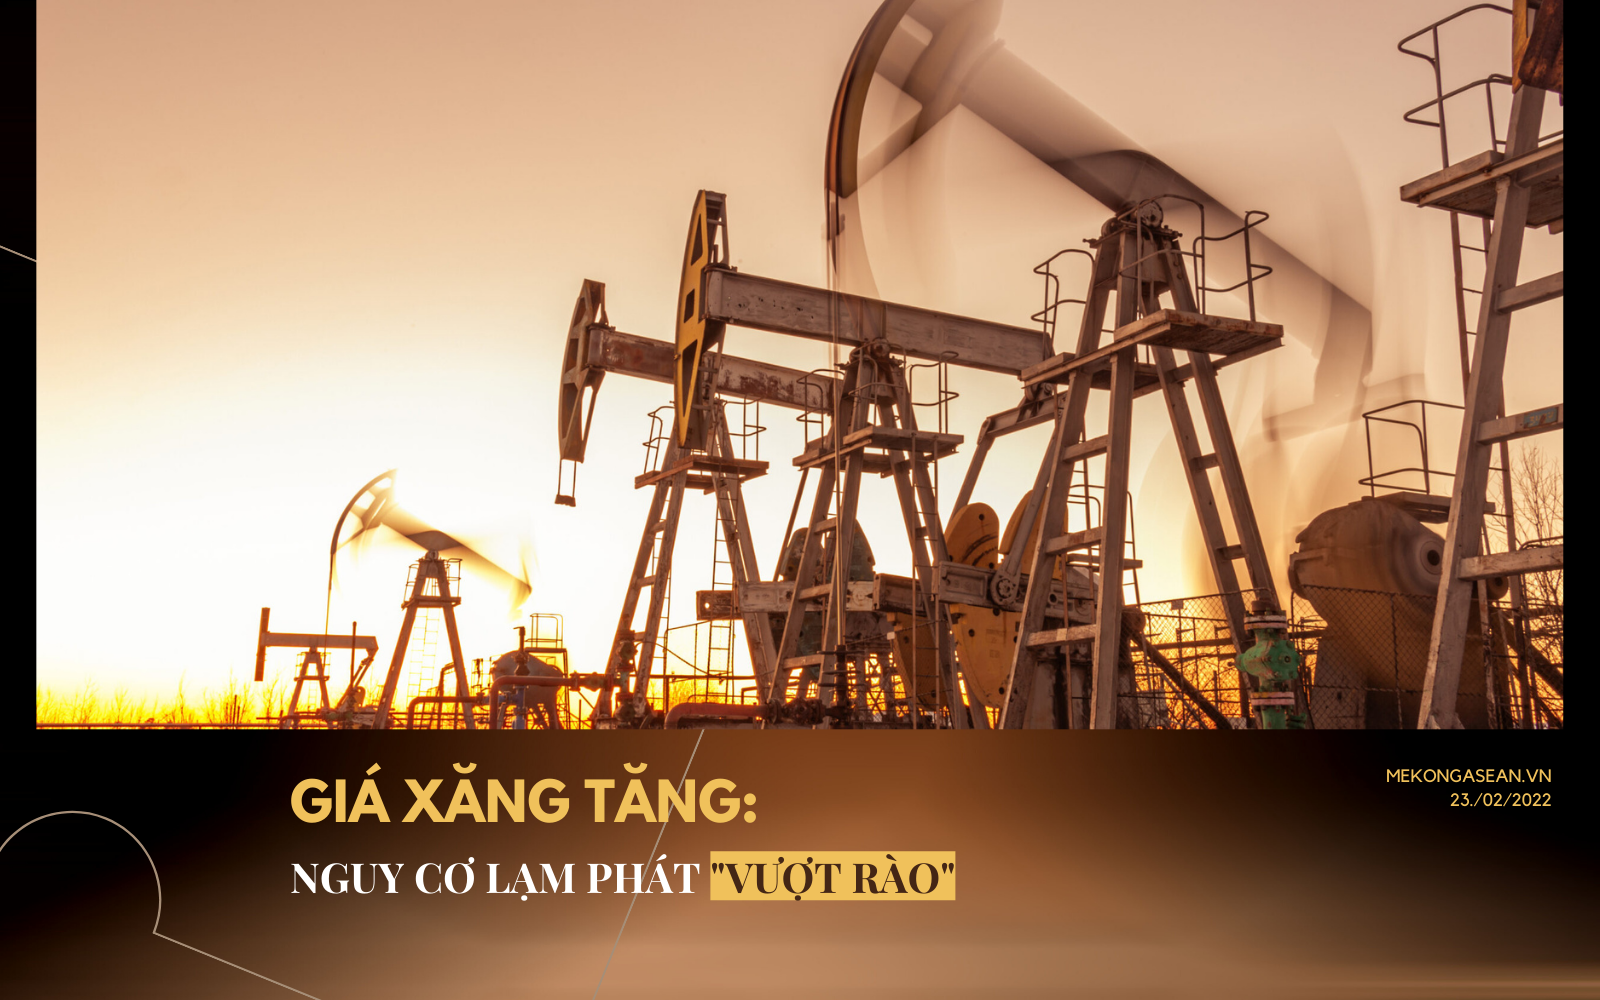 Chuyên gia nói gì về sức ép giá xăng dầu đối với nguy cơ lạm phát ở Việt Nam